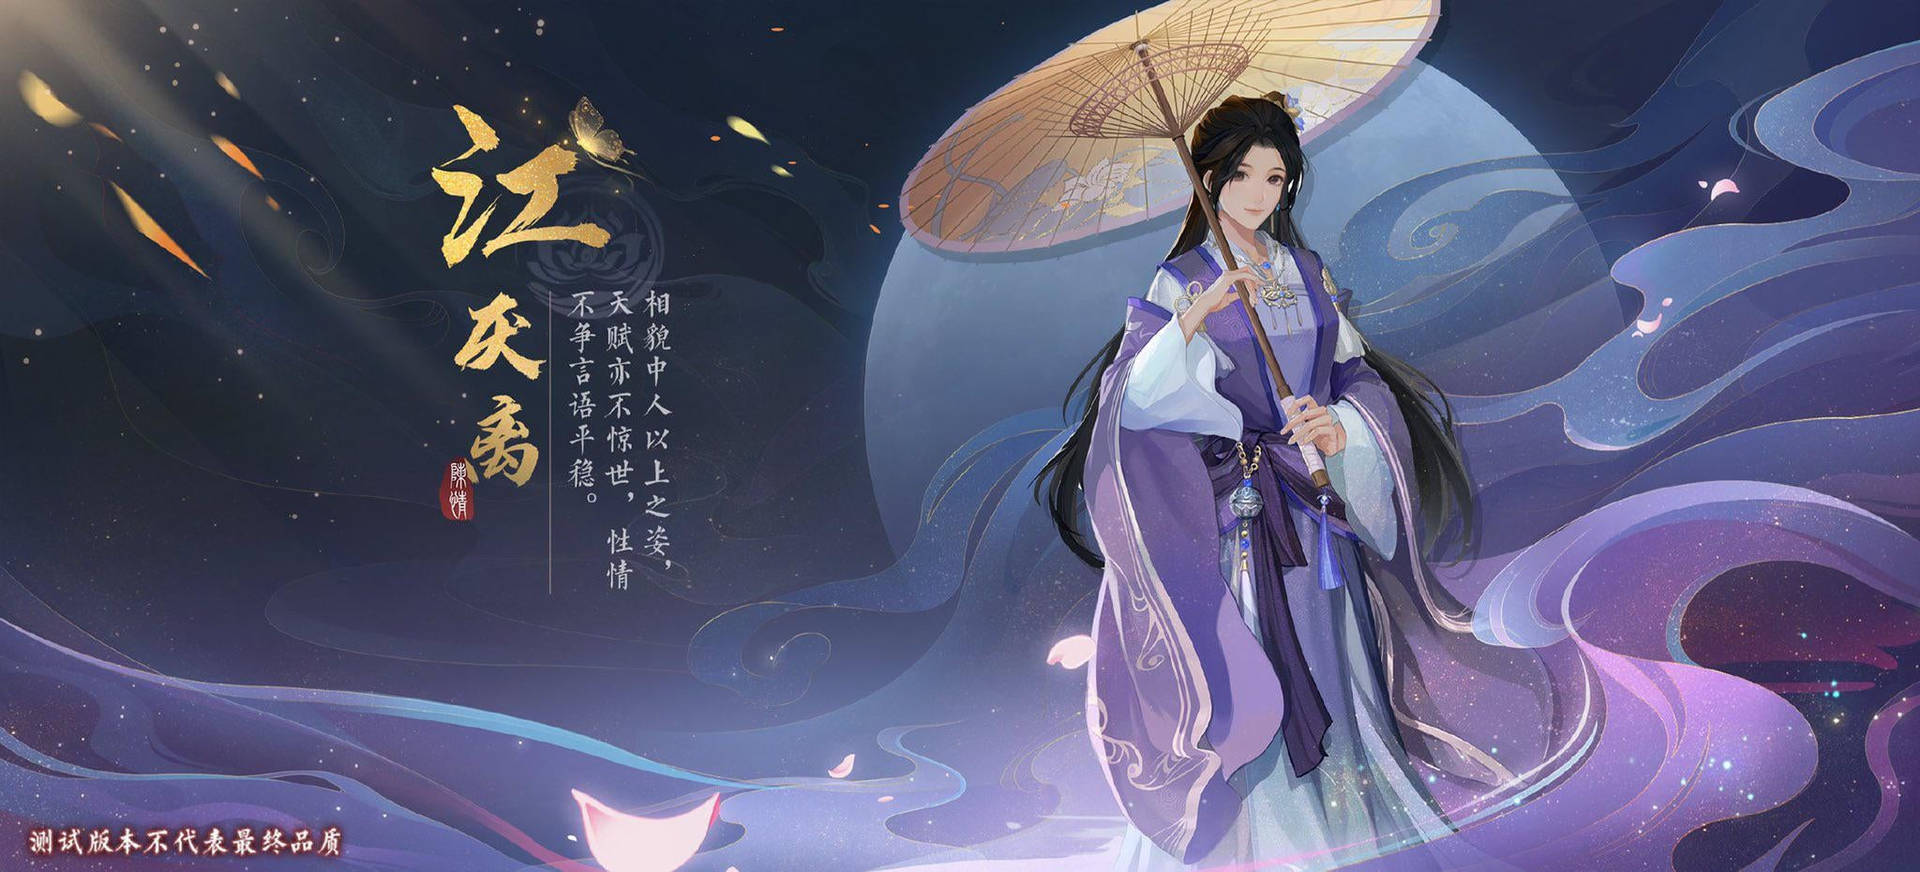 Jiang Yanli Game Poster Mo Dao Zu Shi